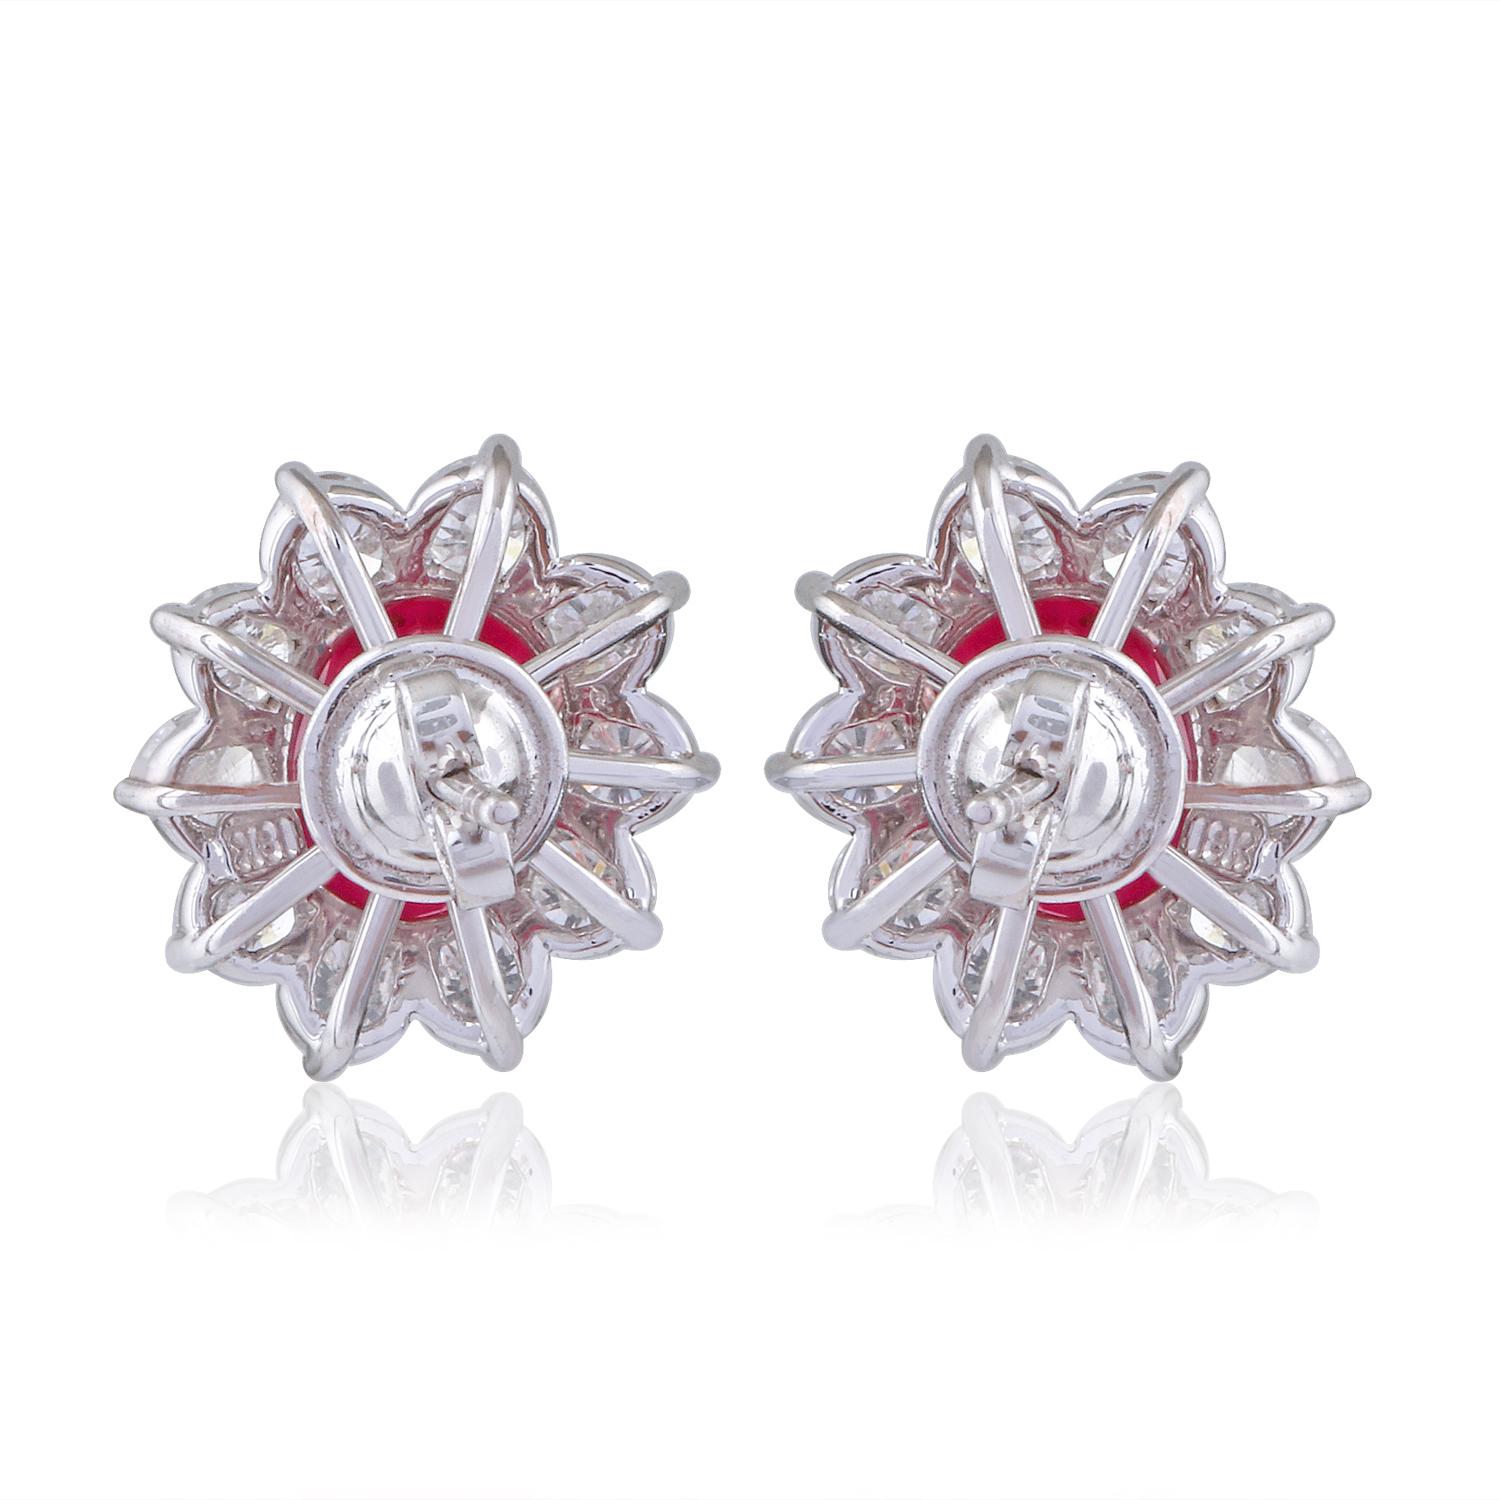 Women's Oval Ruby Gemstone Stud Earrings Diamond 18 Karat White Gold Handmade Jewelry For Sale